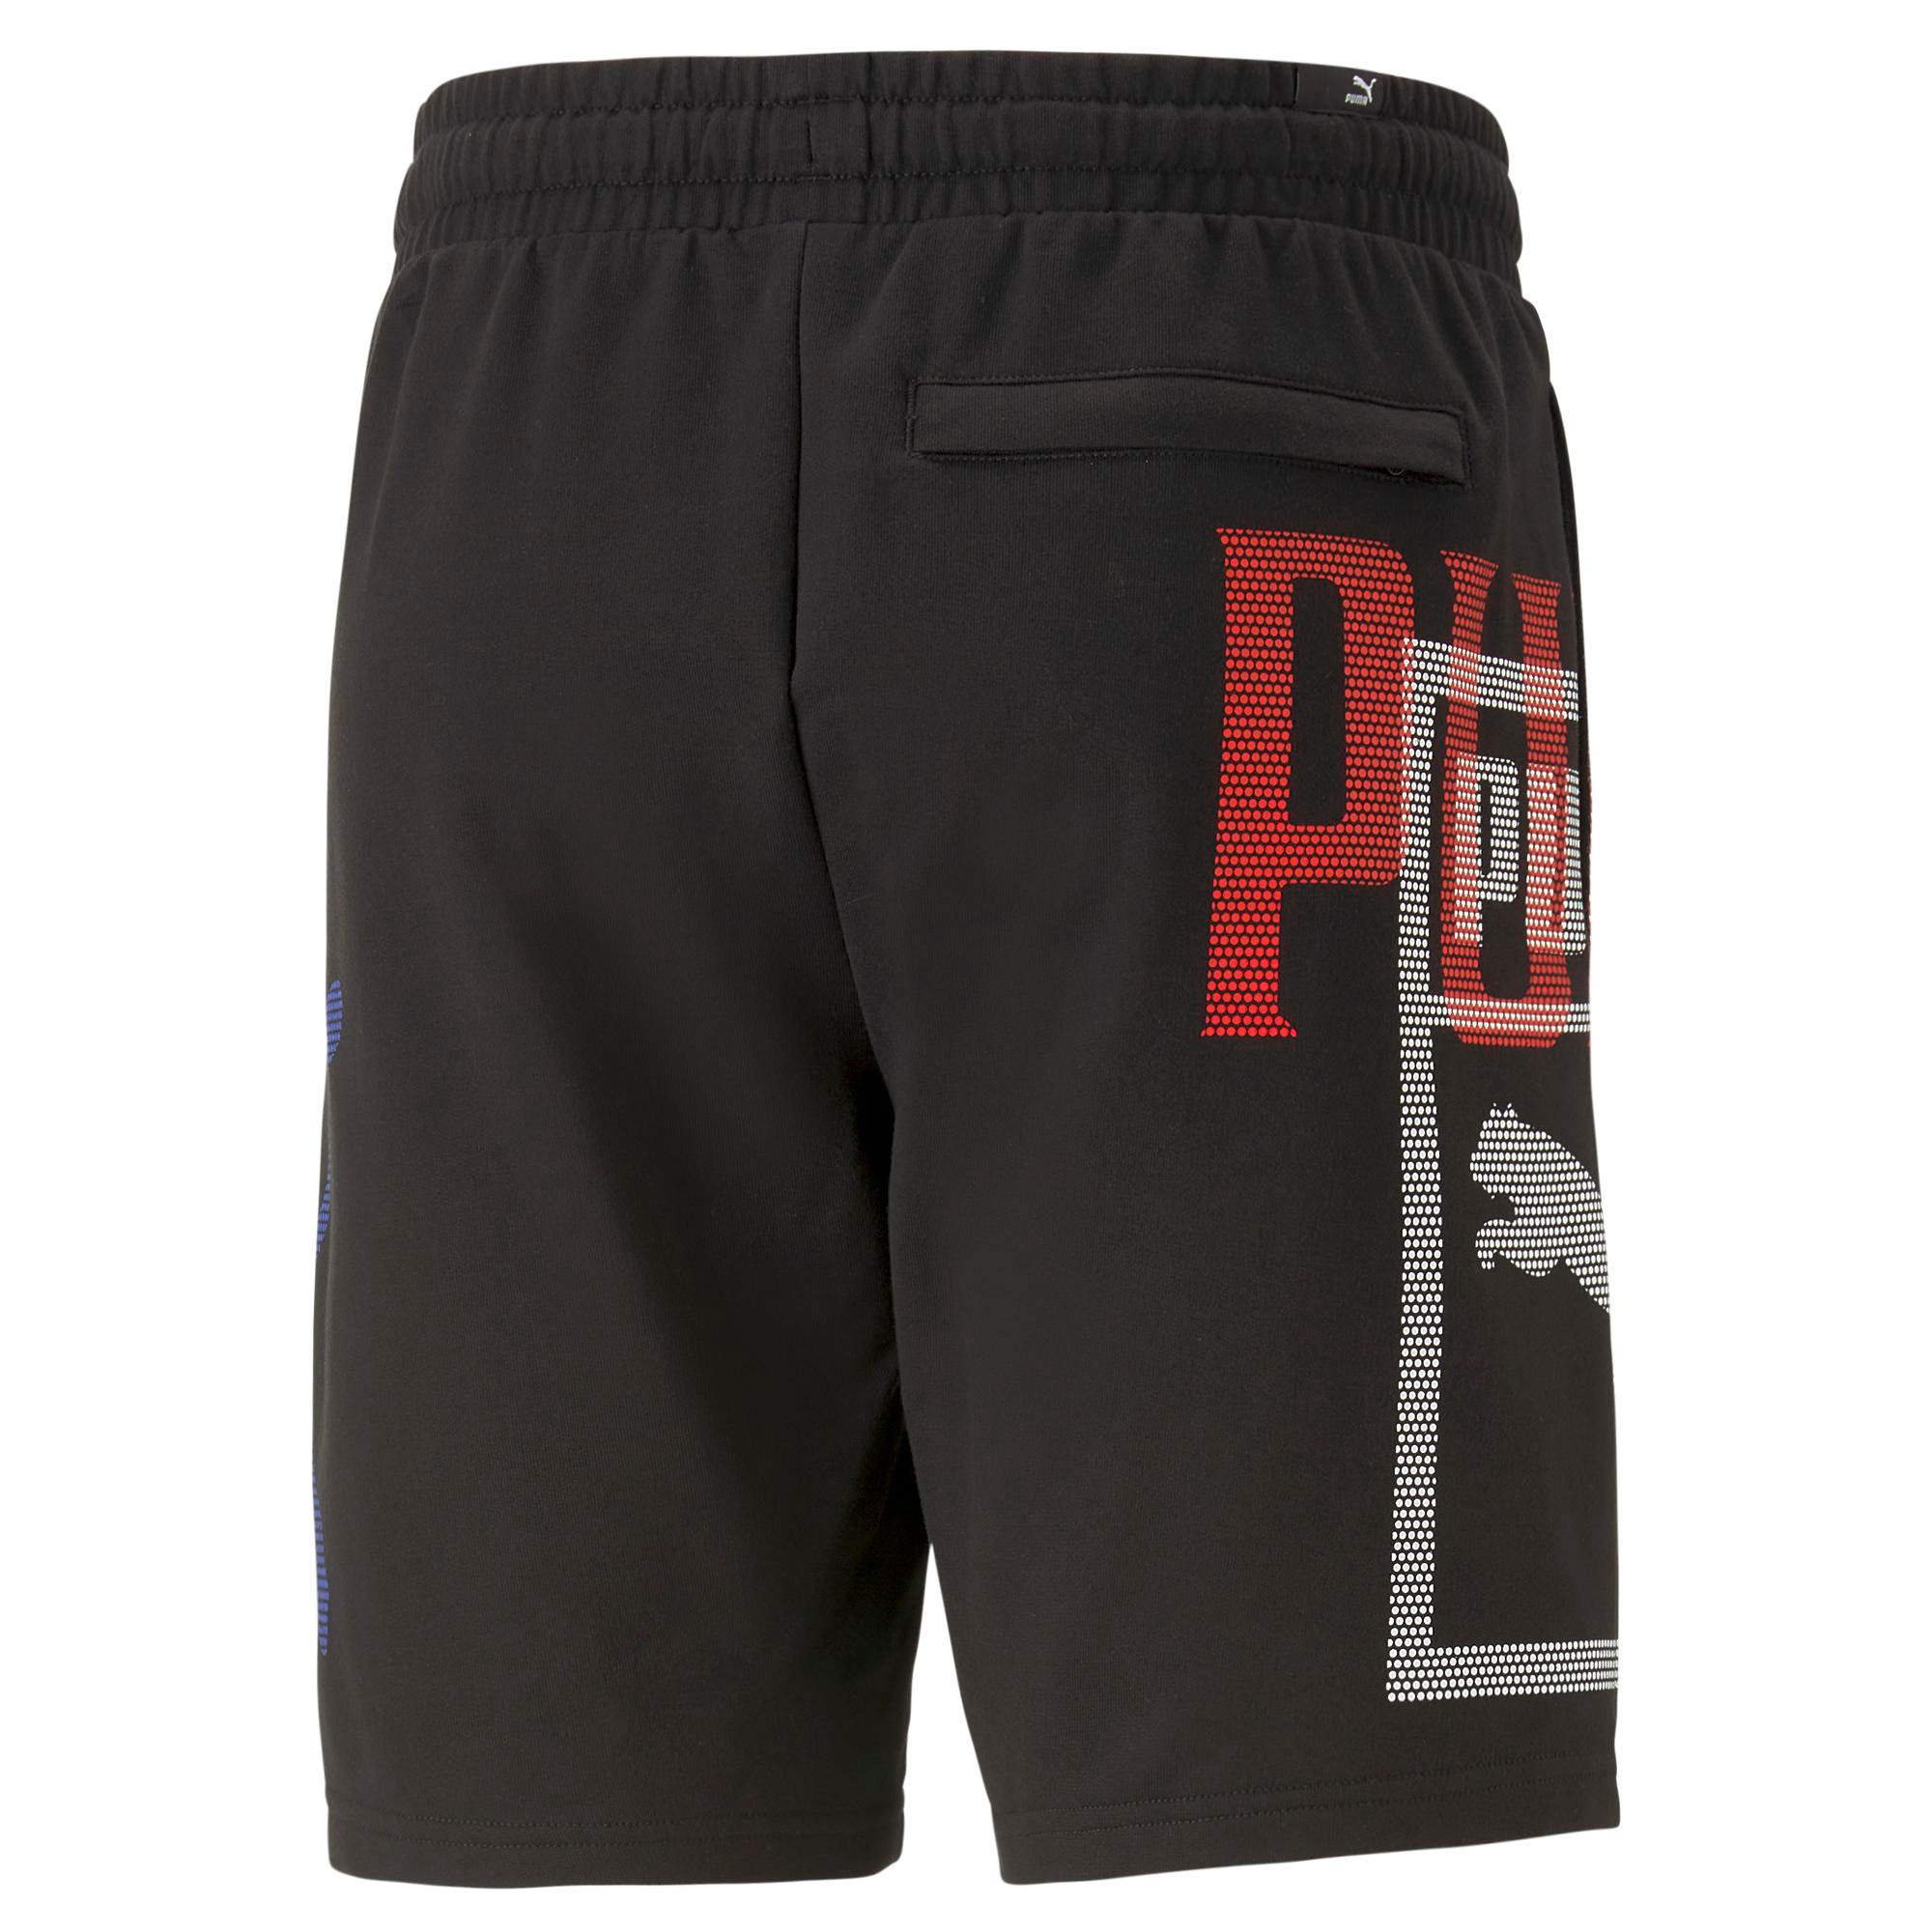 Puma - Shorts with logo, Black, large image number 1